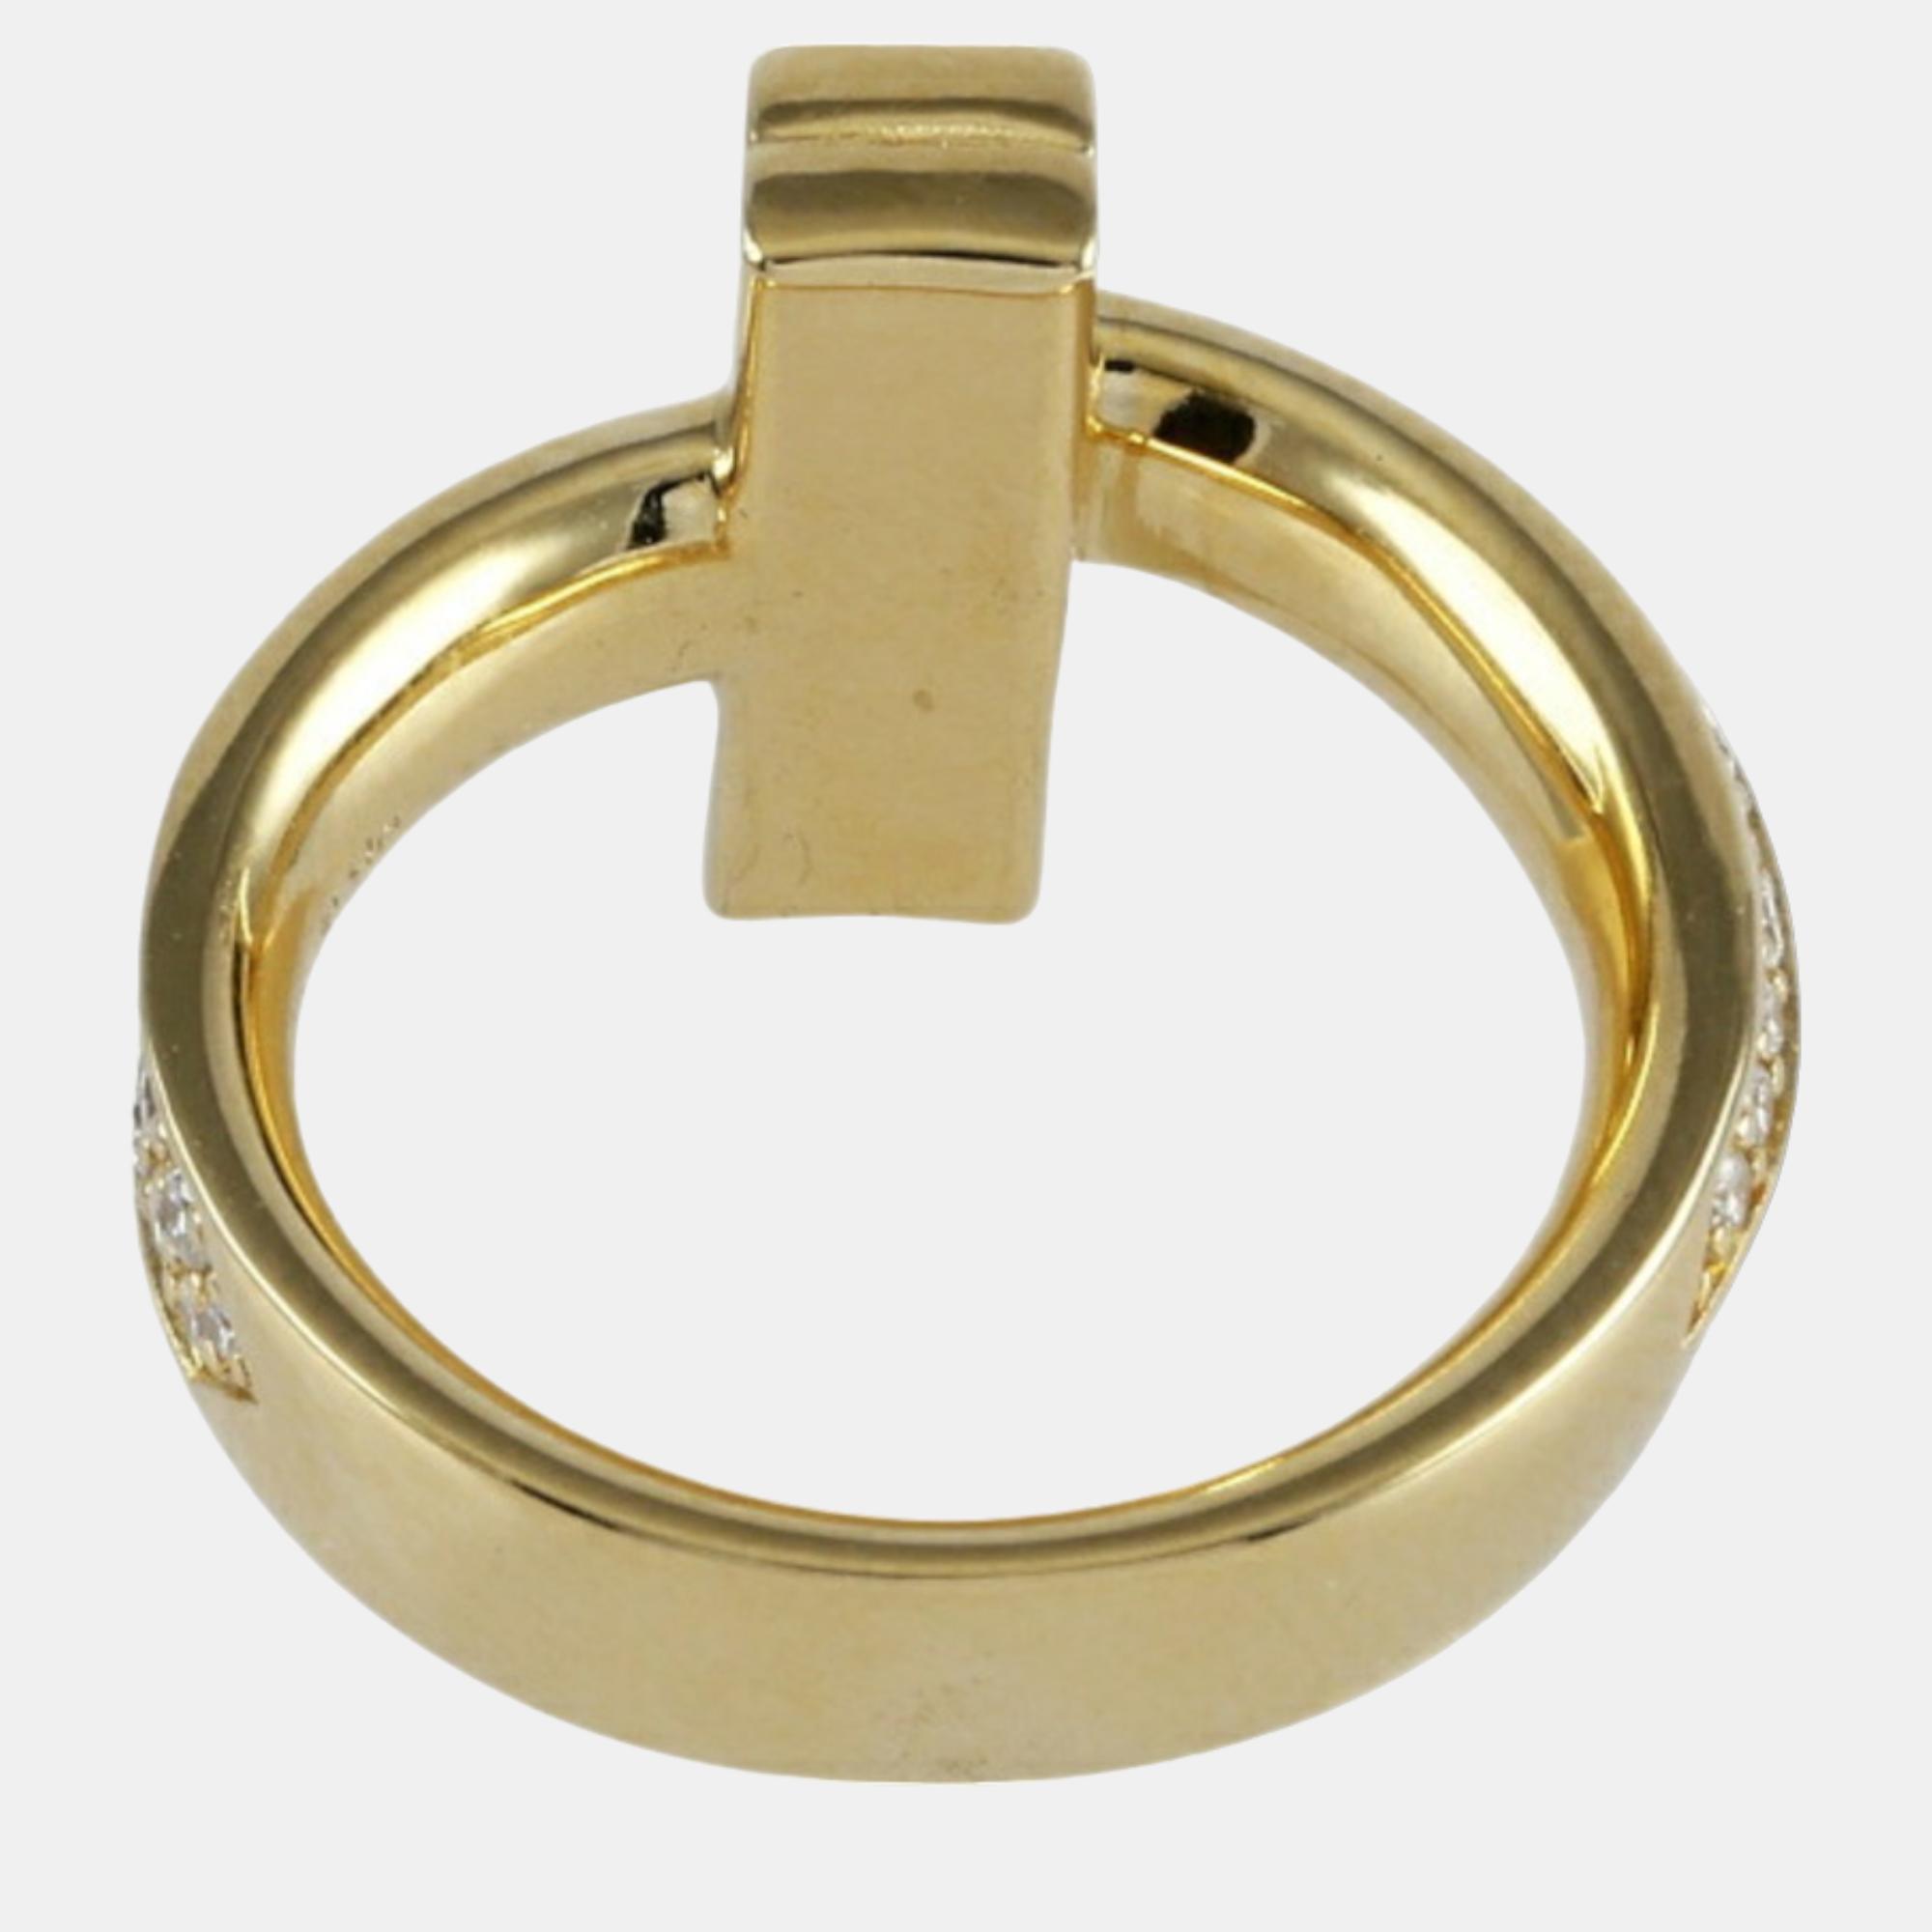 Tiffany & Co. Tiffany T 1 18K Yellow Gold Diamond Ring EU 47